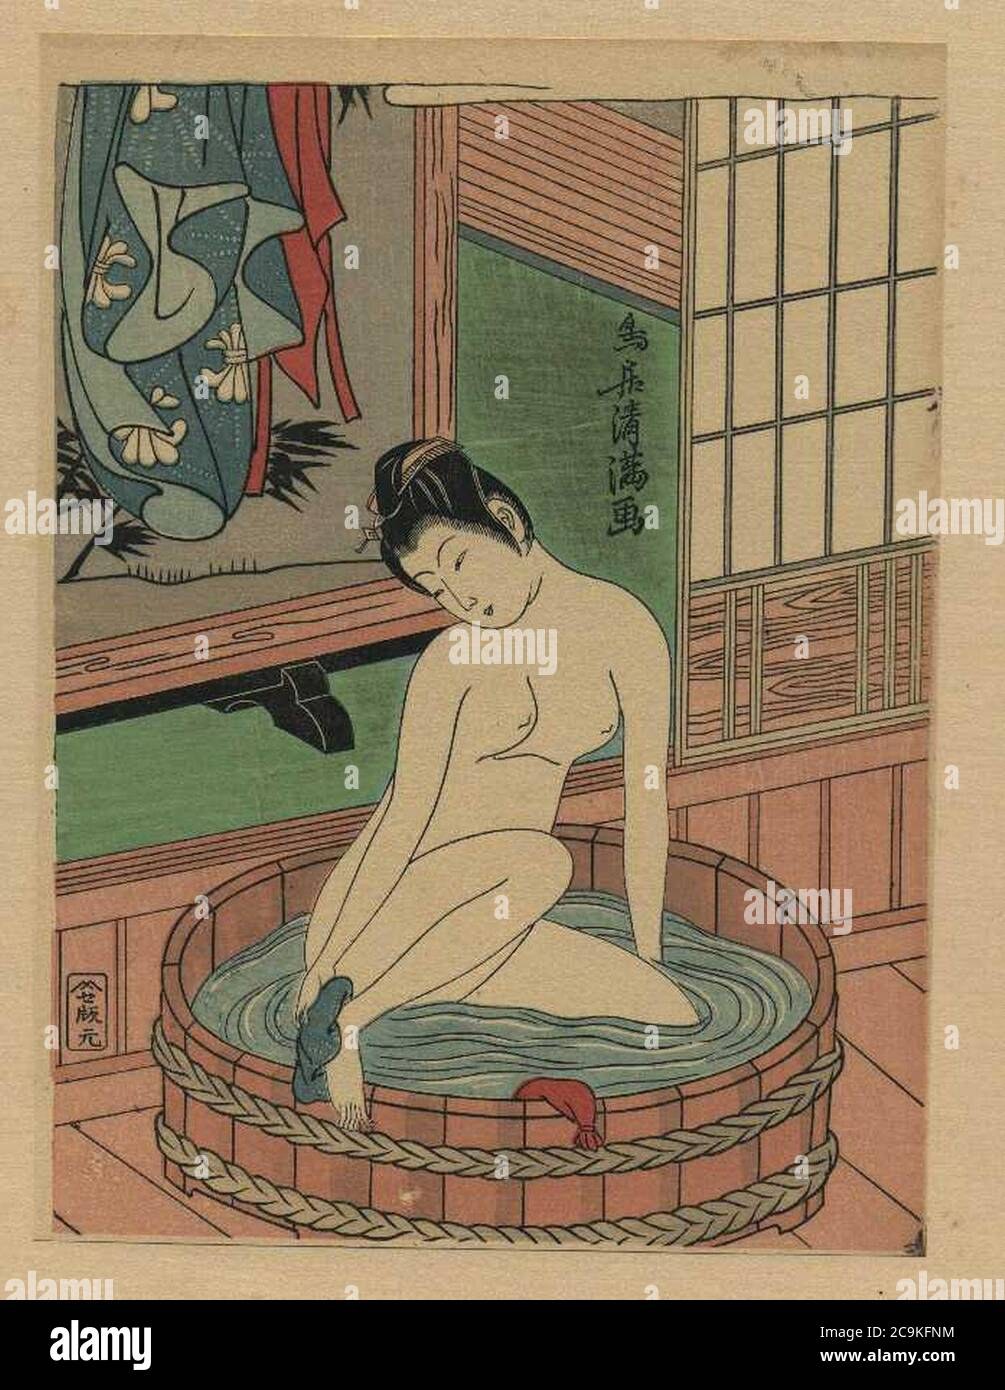 азиатские бани эротика фото 99